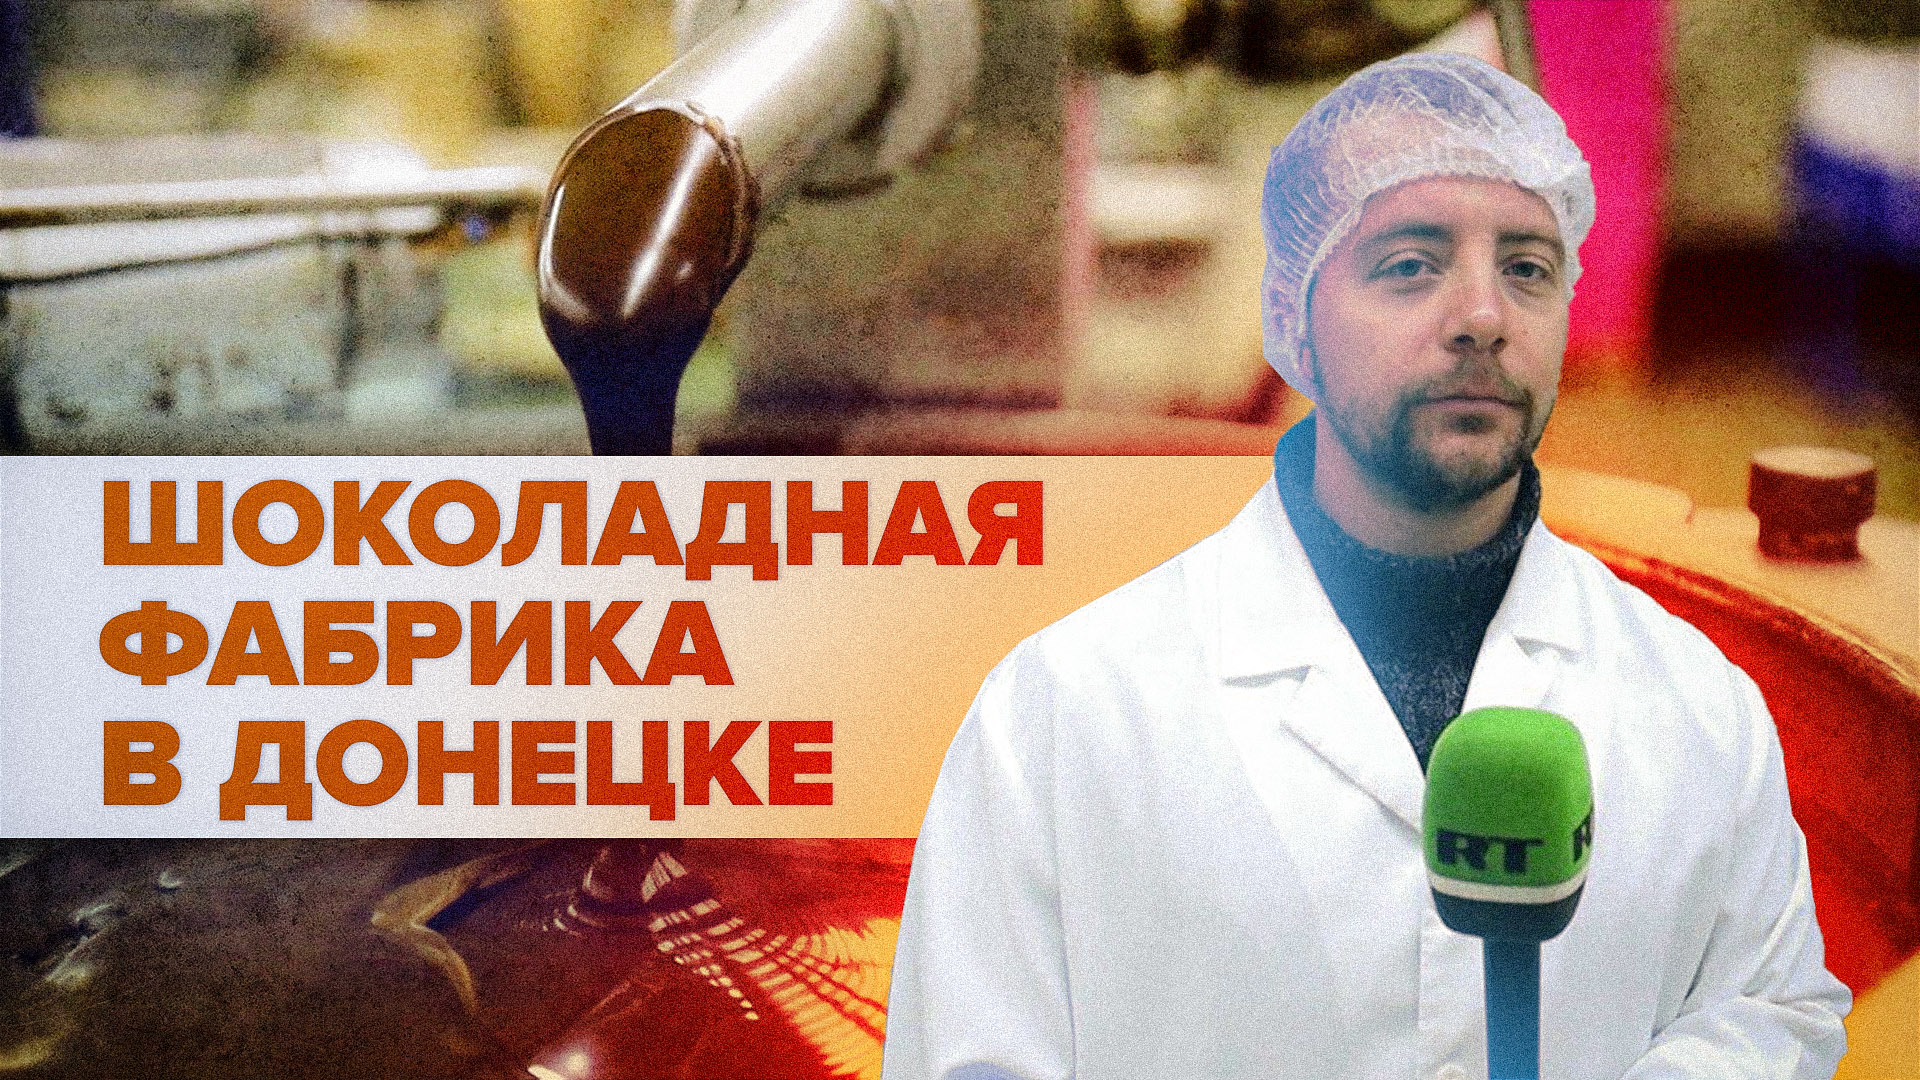 Производство сладостей под обстрелами: как работает шоколадная фабрика в Донецке